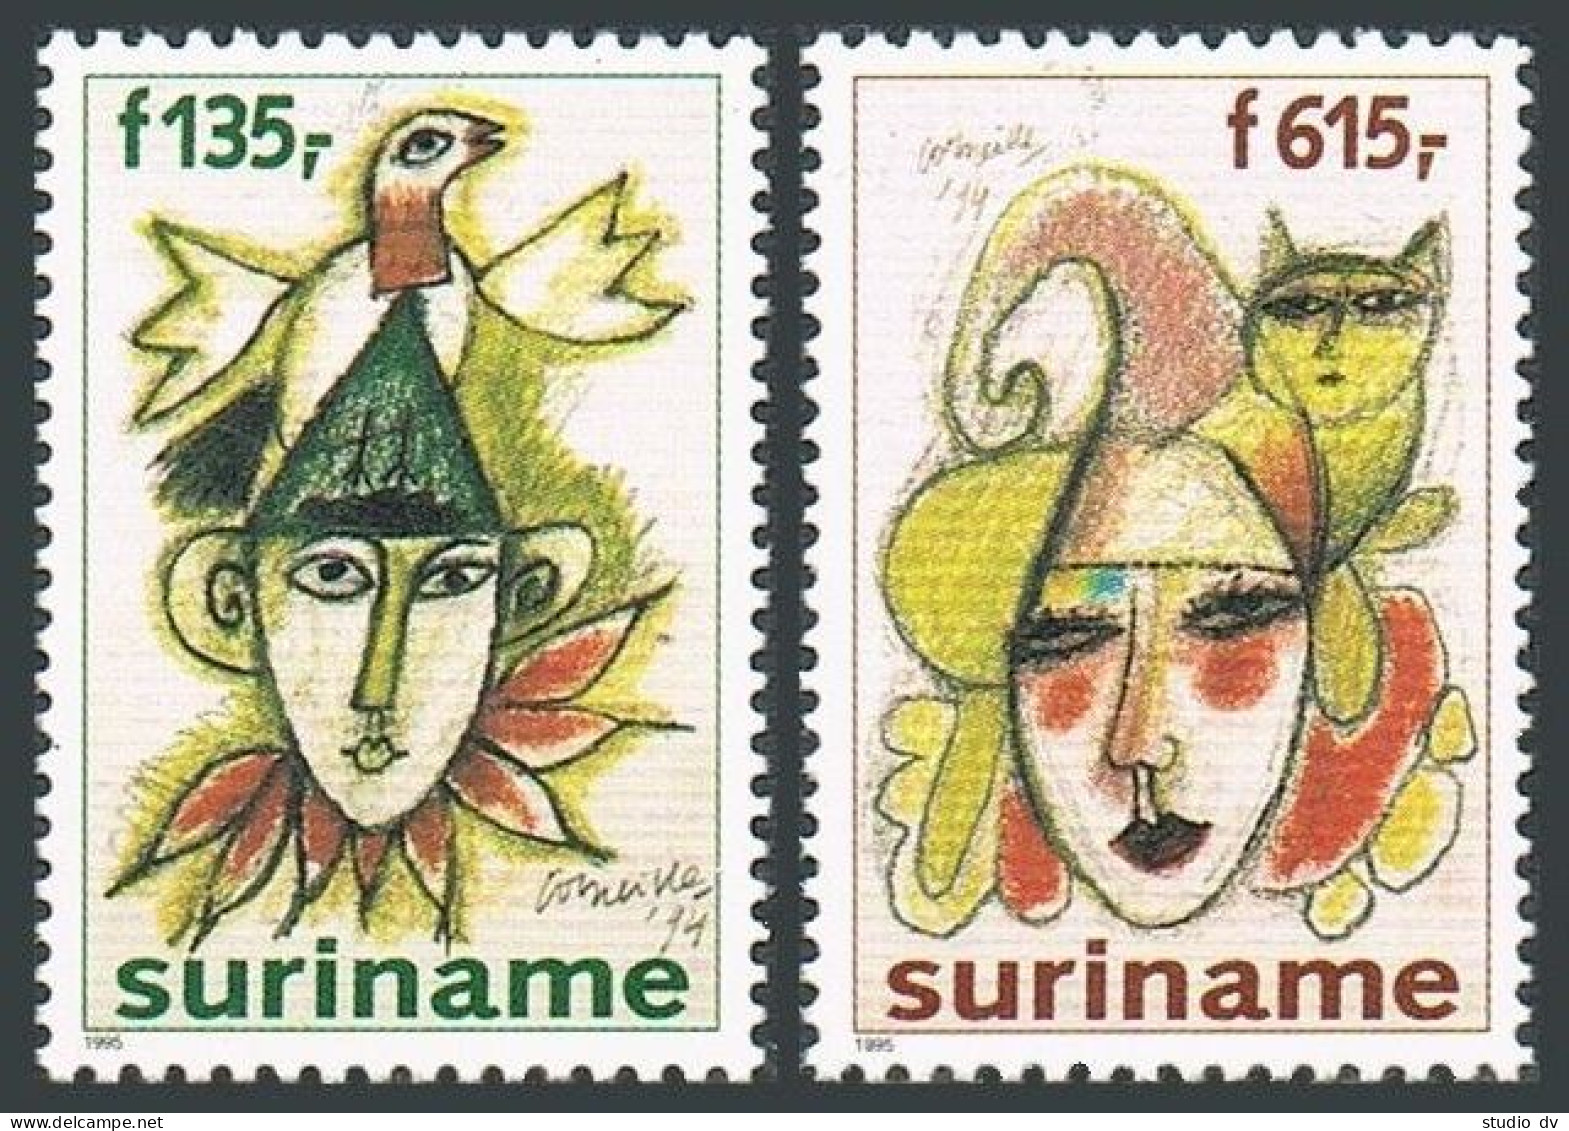 Surinam 1026-1027, MNH. Mi 1533-1534. Paintings Of Jesters, By Corneille, 1995. - Surinam